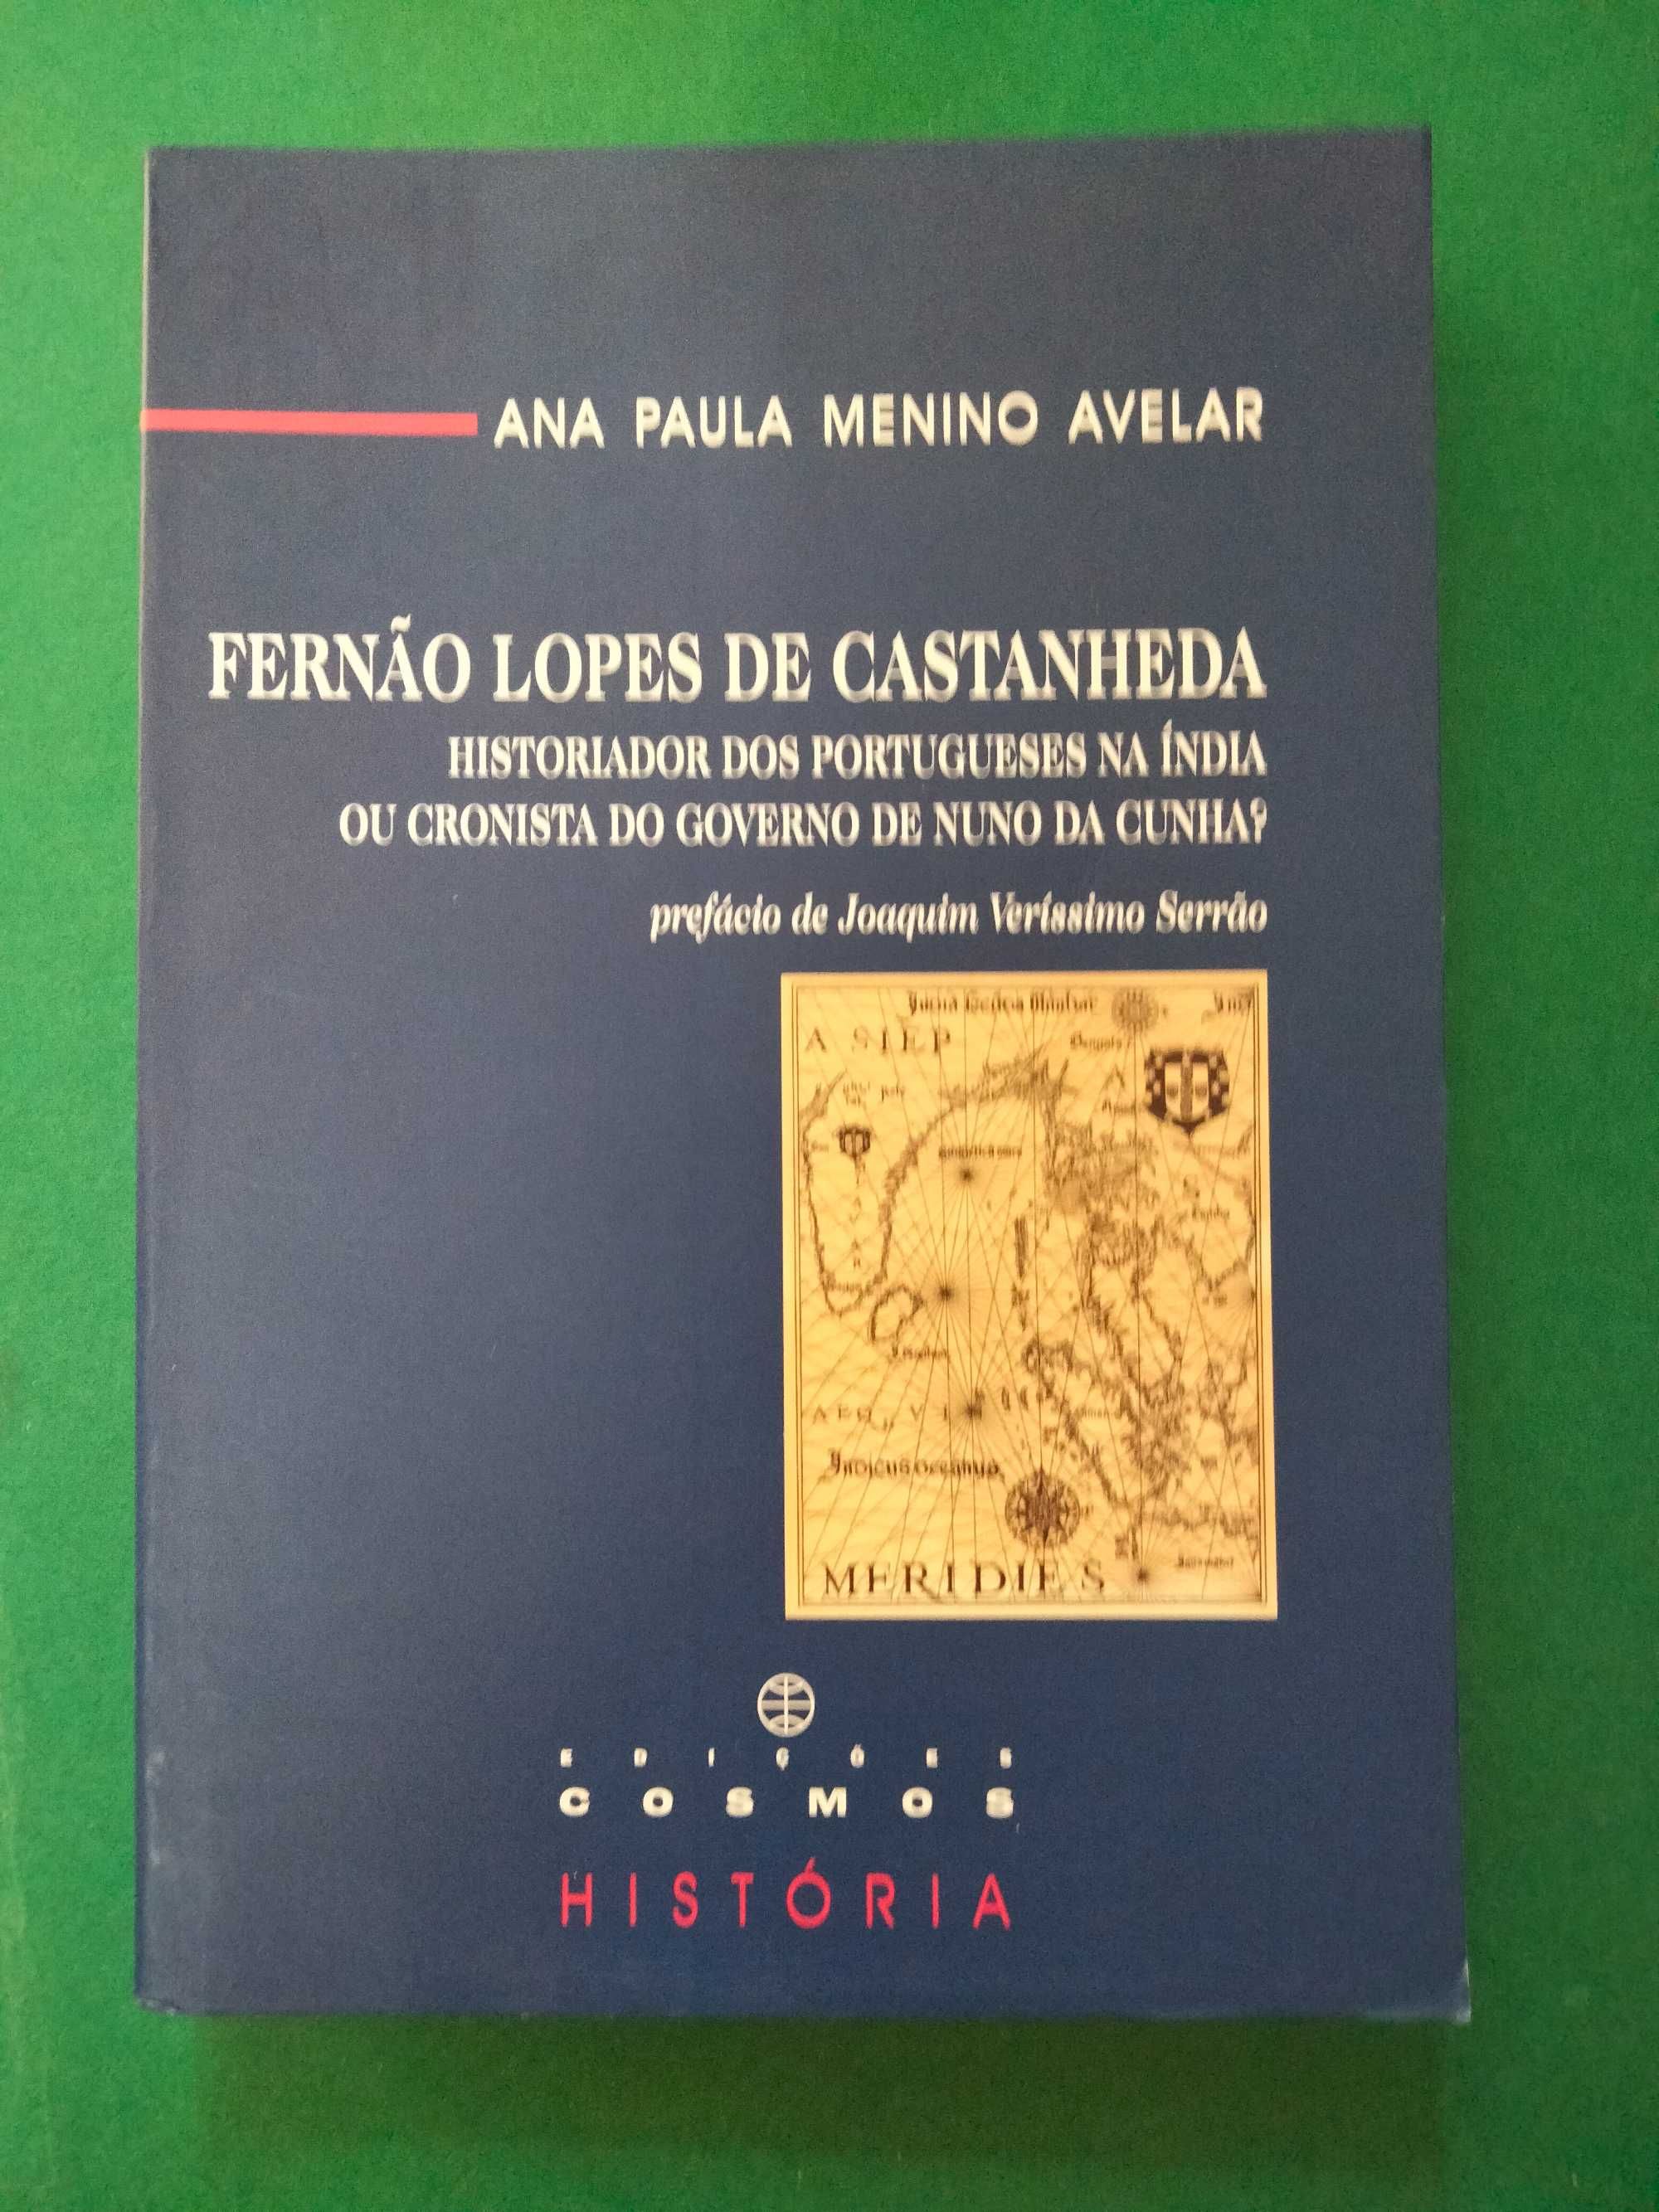 Fernão Lopes de Castanheda - Ana Paula Menino Avelar